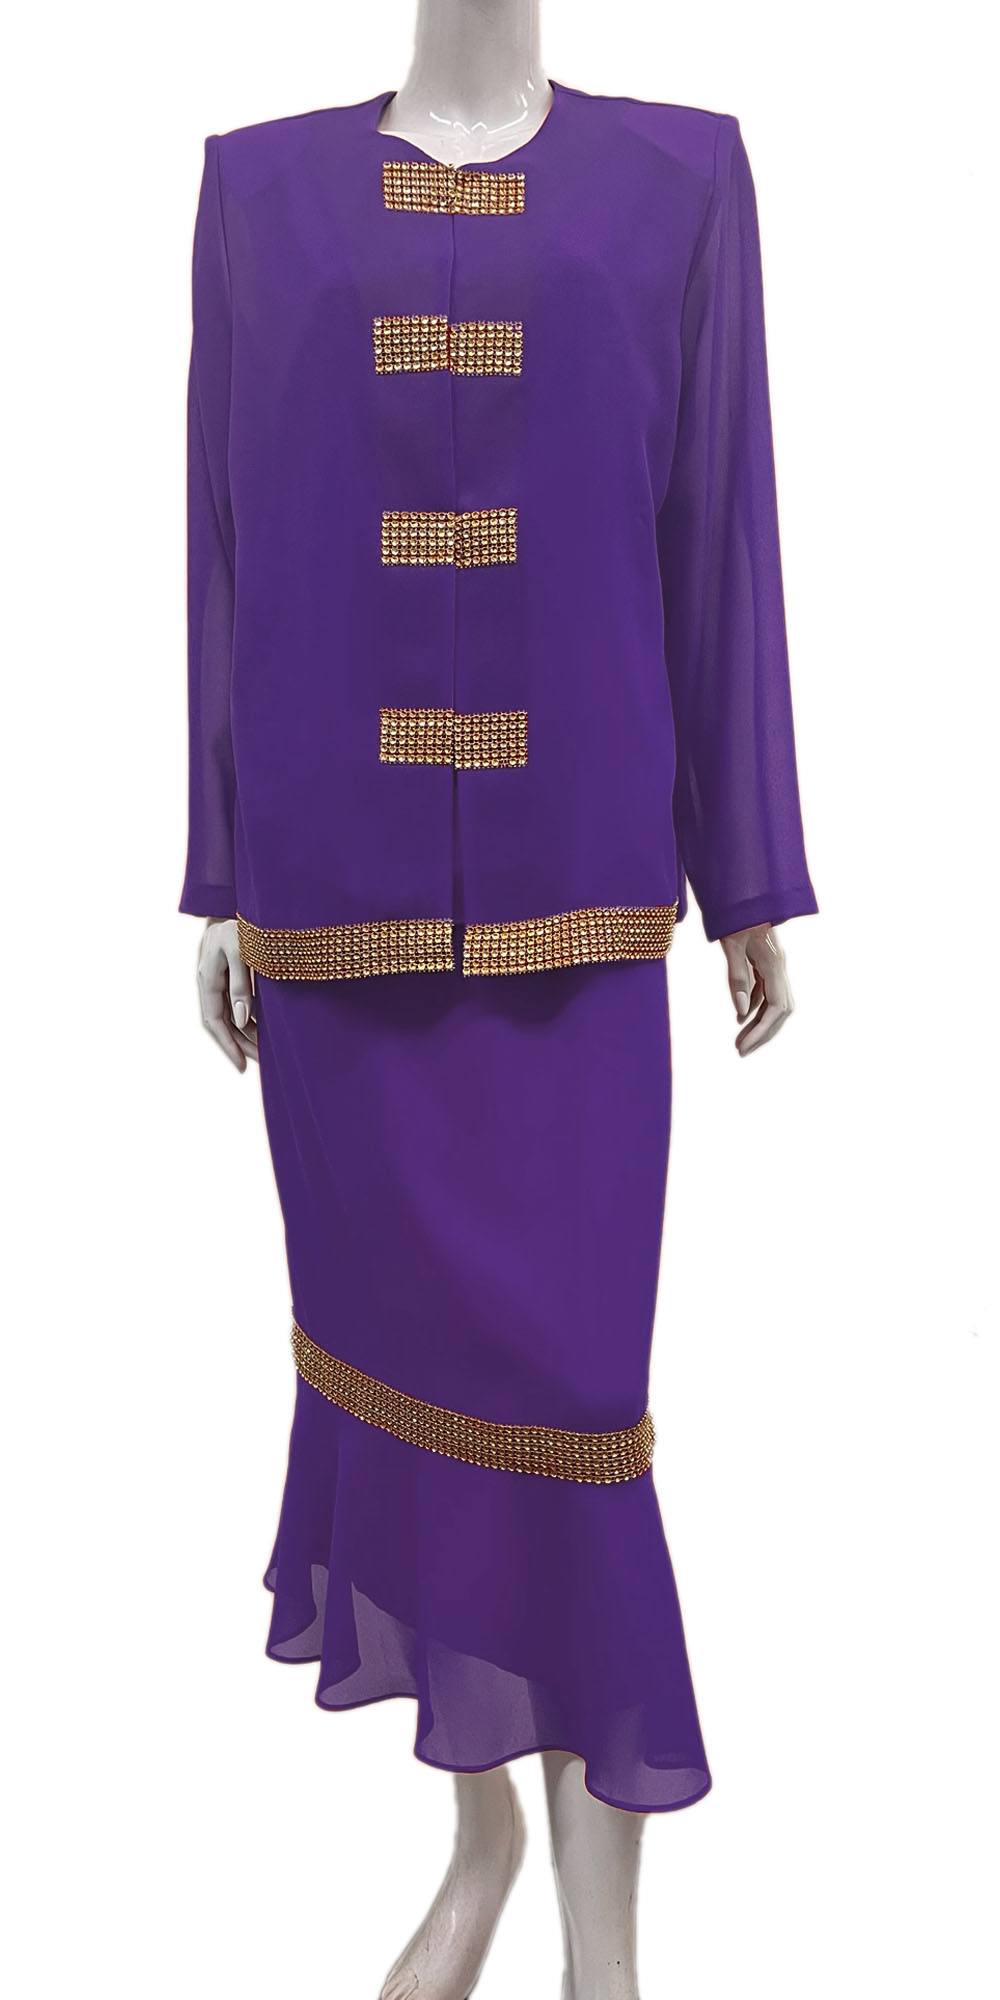 Hosanna Design 5515 Dress